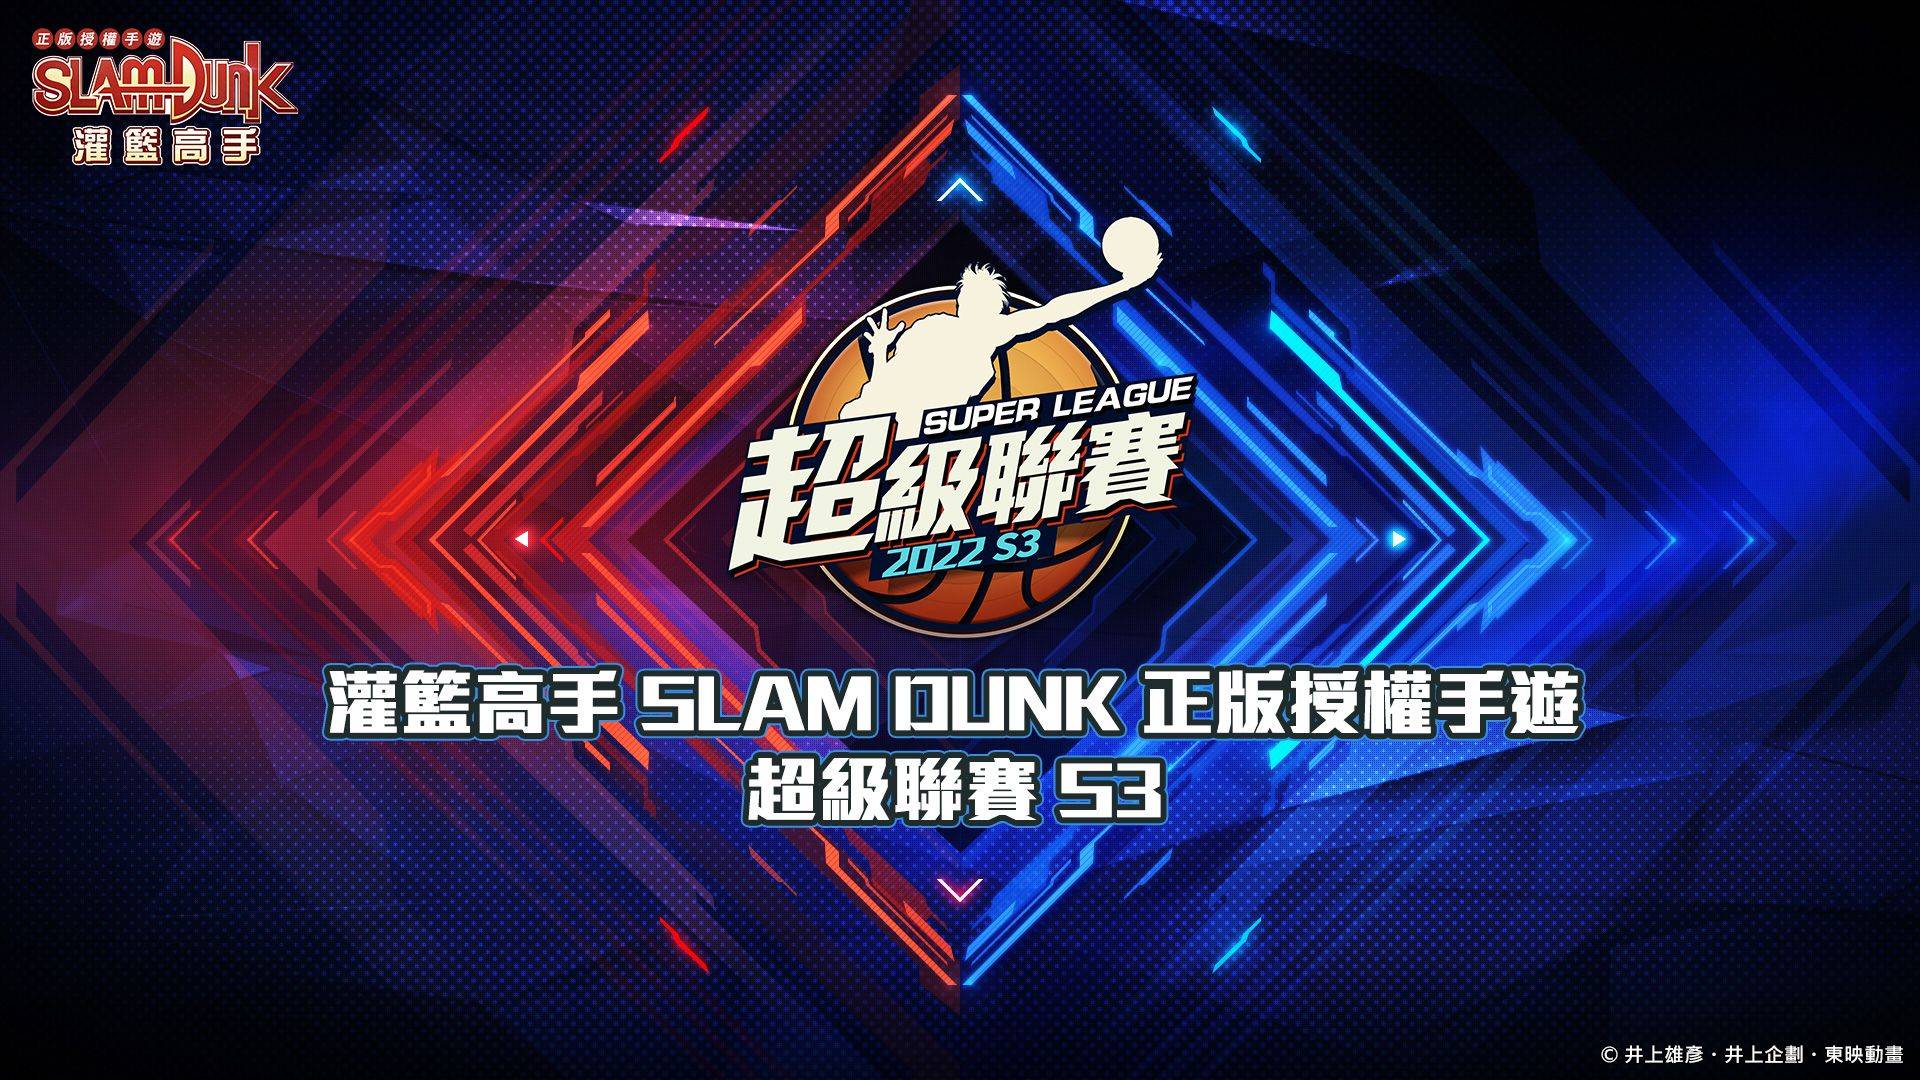 《灌籃高手 SLAM DUNK》高野昭一球員資料登場！ 超級聯賽S3總決賽即將於3/27火熱開打